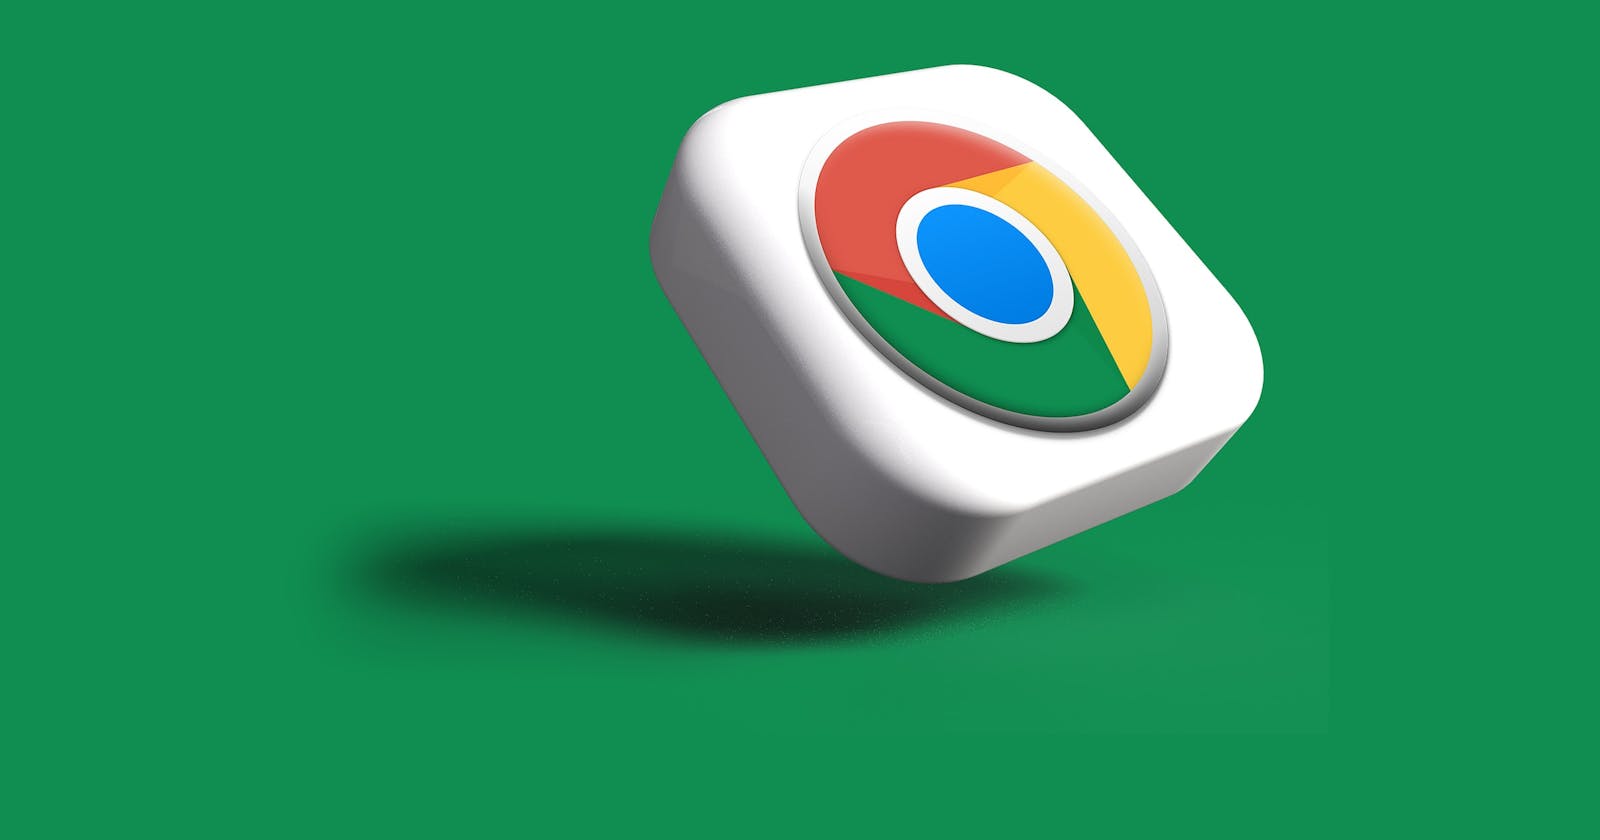 Google Chrome user guide for Mobile